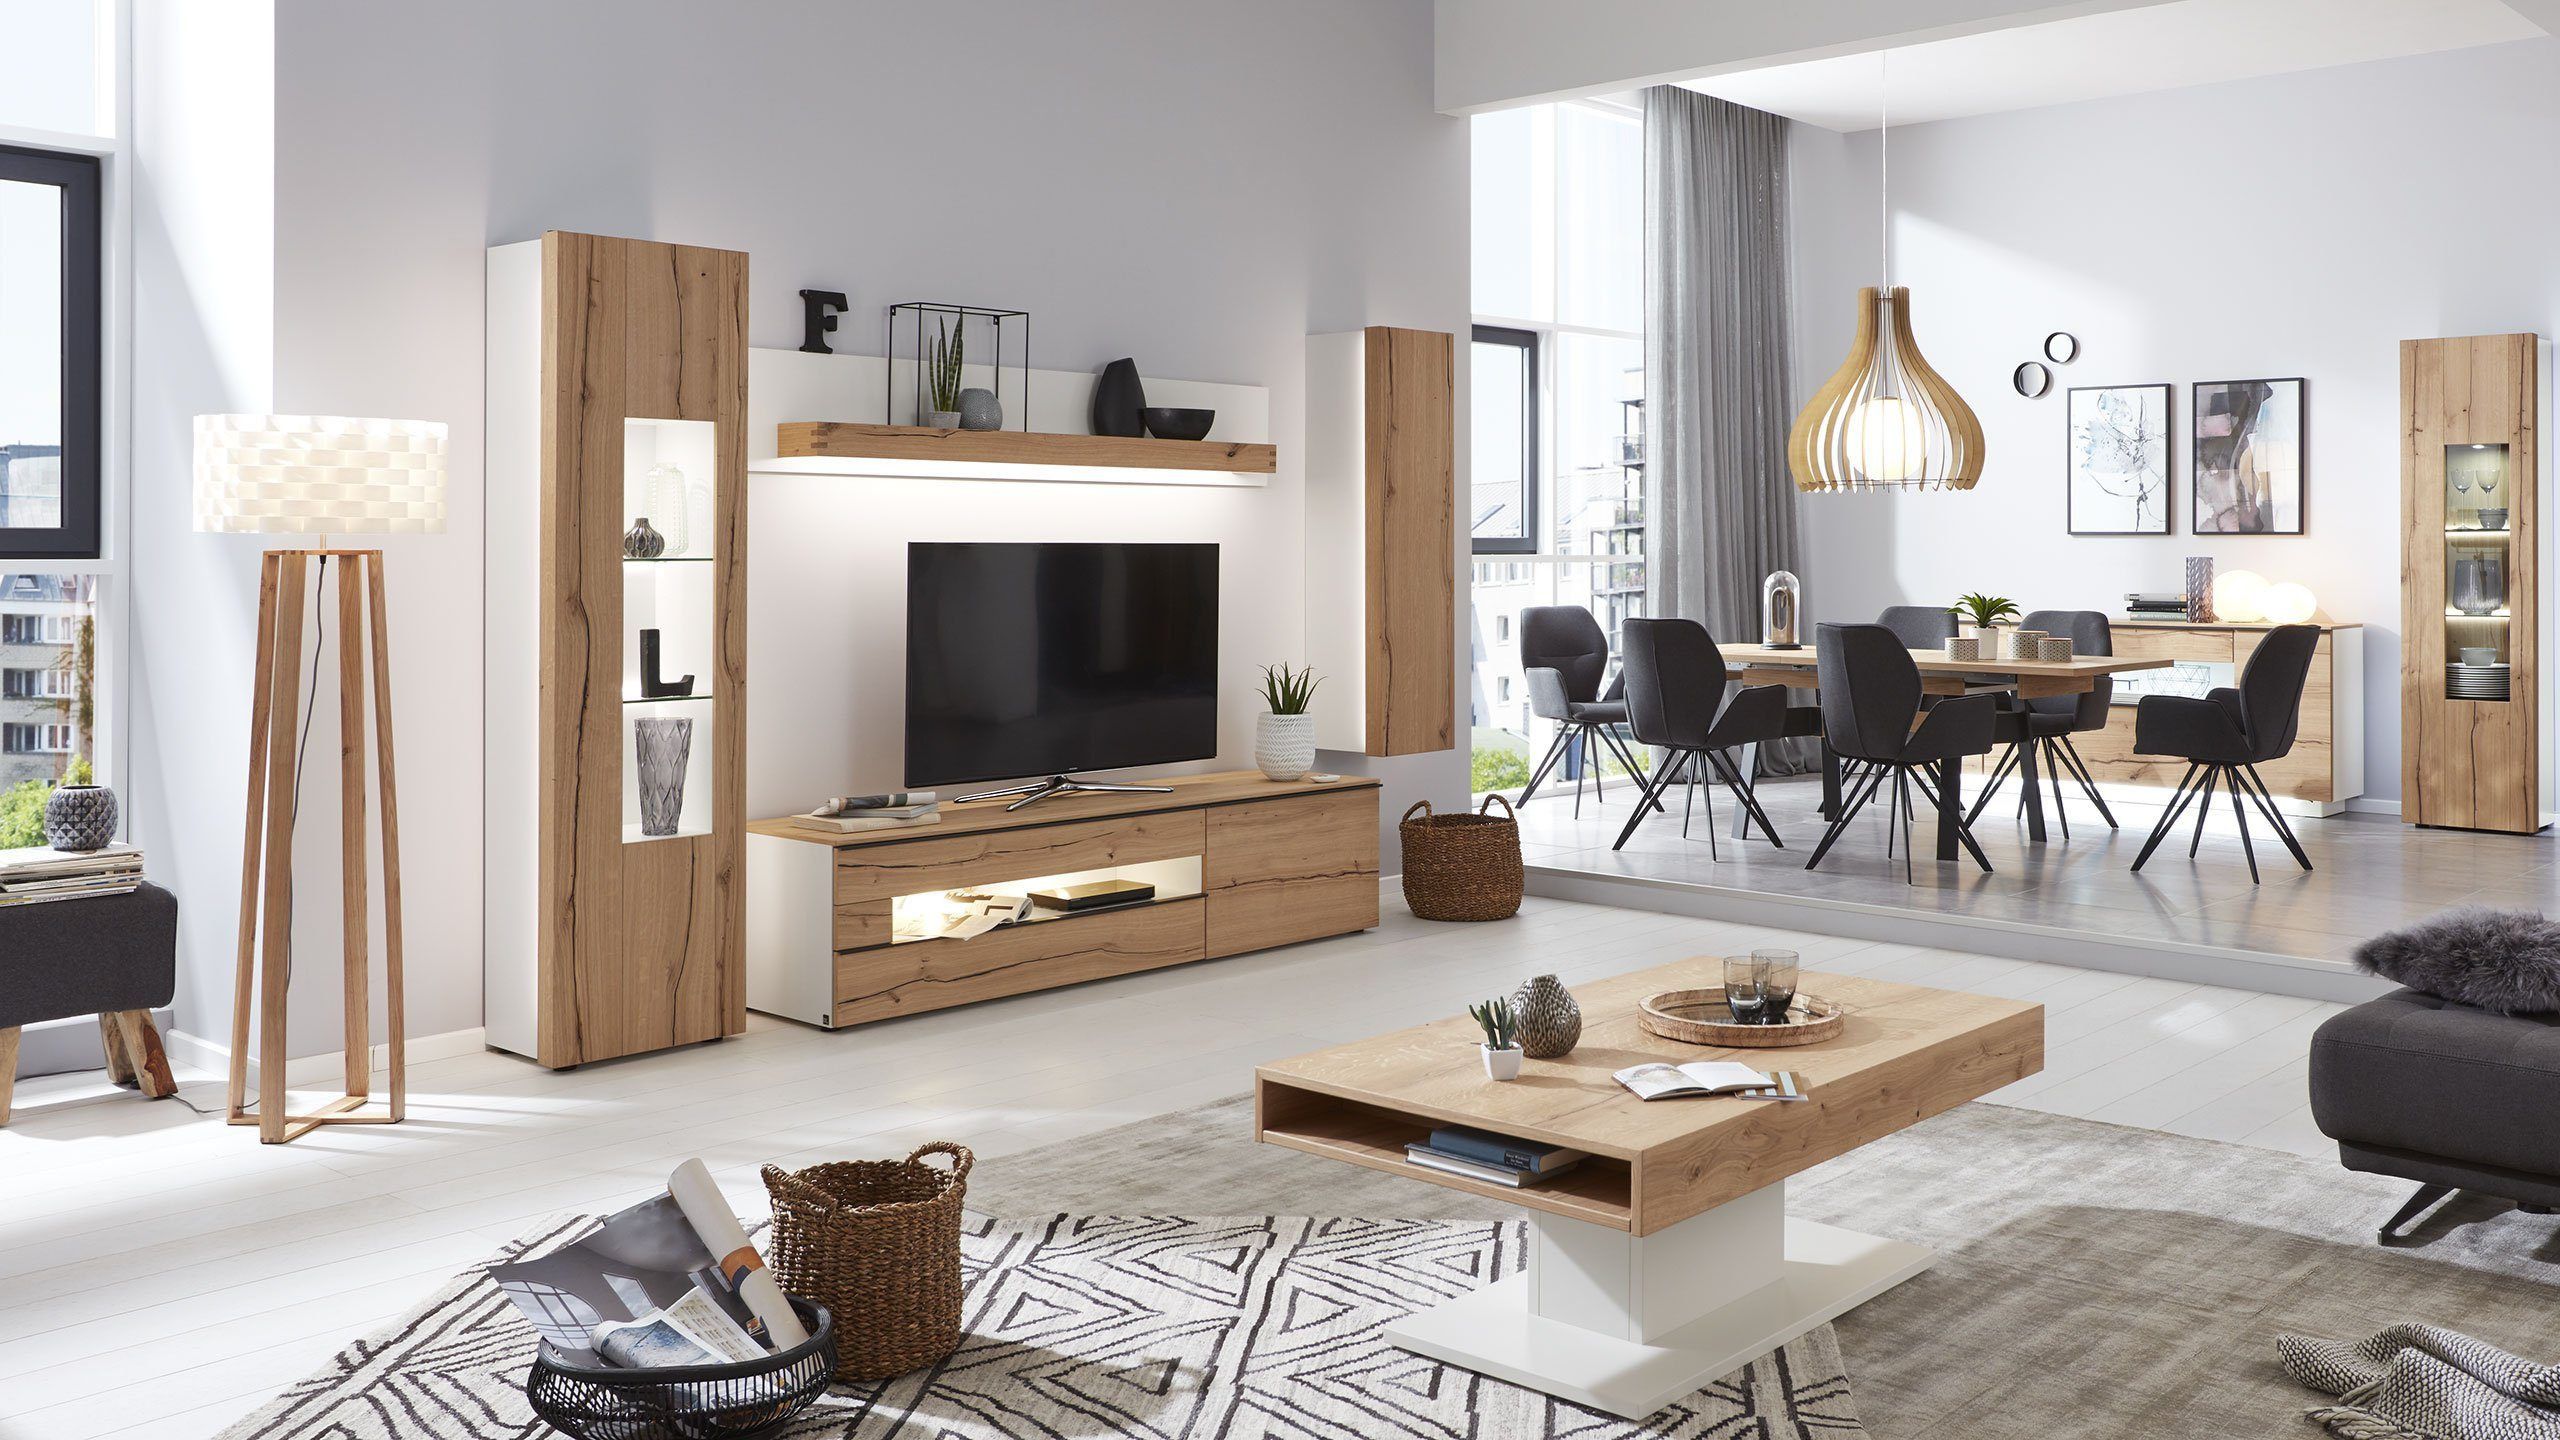 Moderne Wohnzimmermöbel - Vom Sideboard Bis Esstische throughout Moderne Wohnzimmermöbel